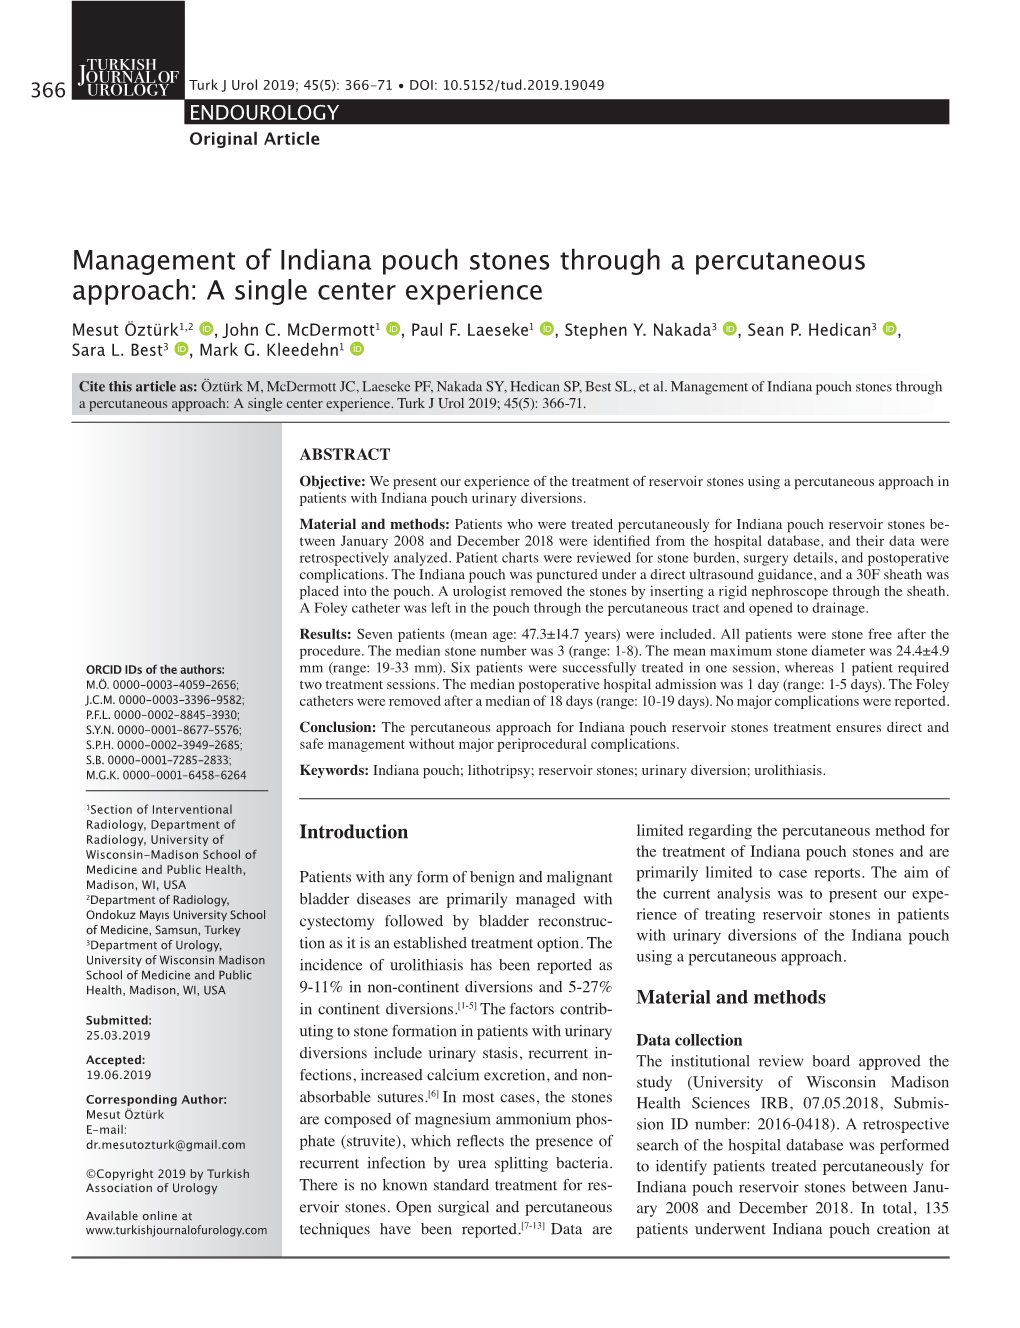 Management of Indiana Pouch Stones Through a Percutaneous Approach: a Single Center Experience Mesut Öztürk1,2 , John C